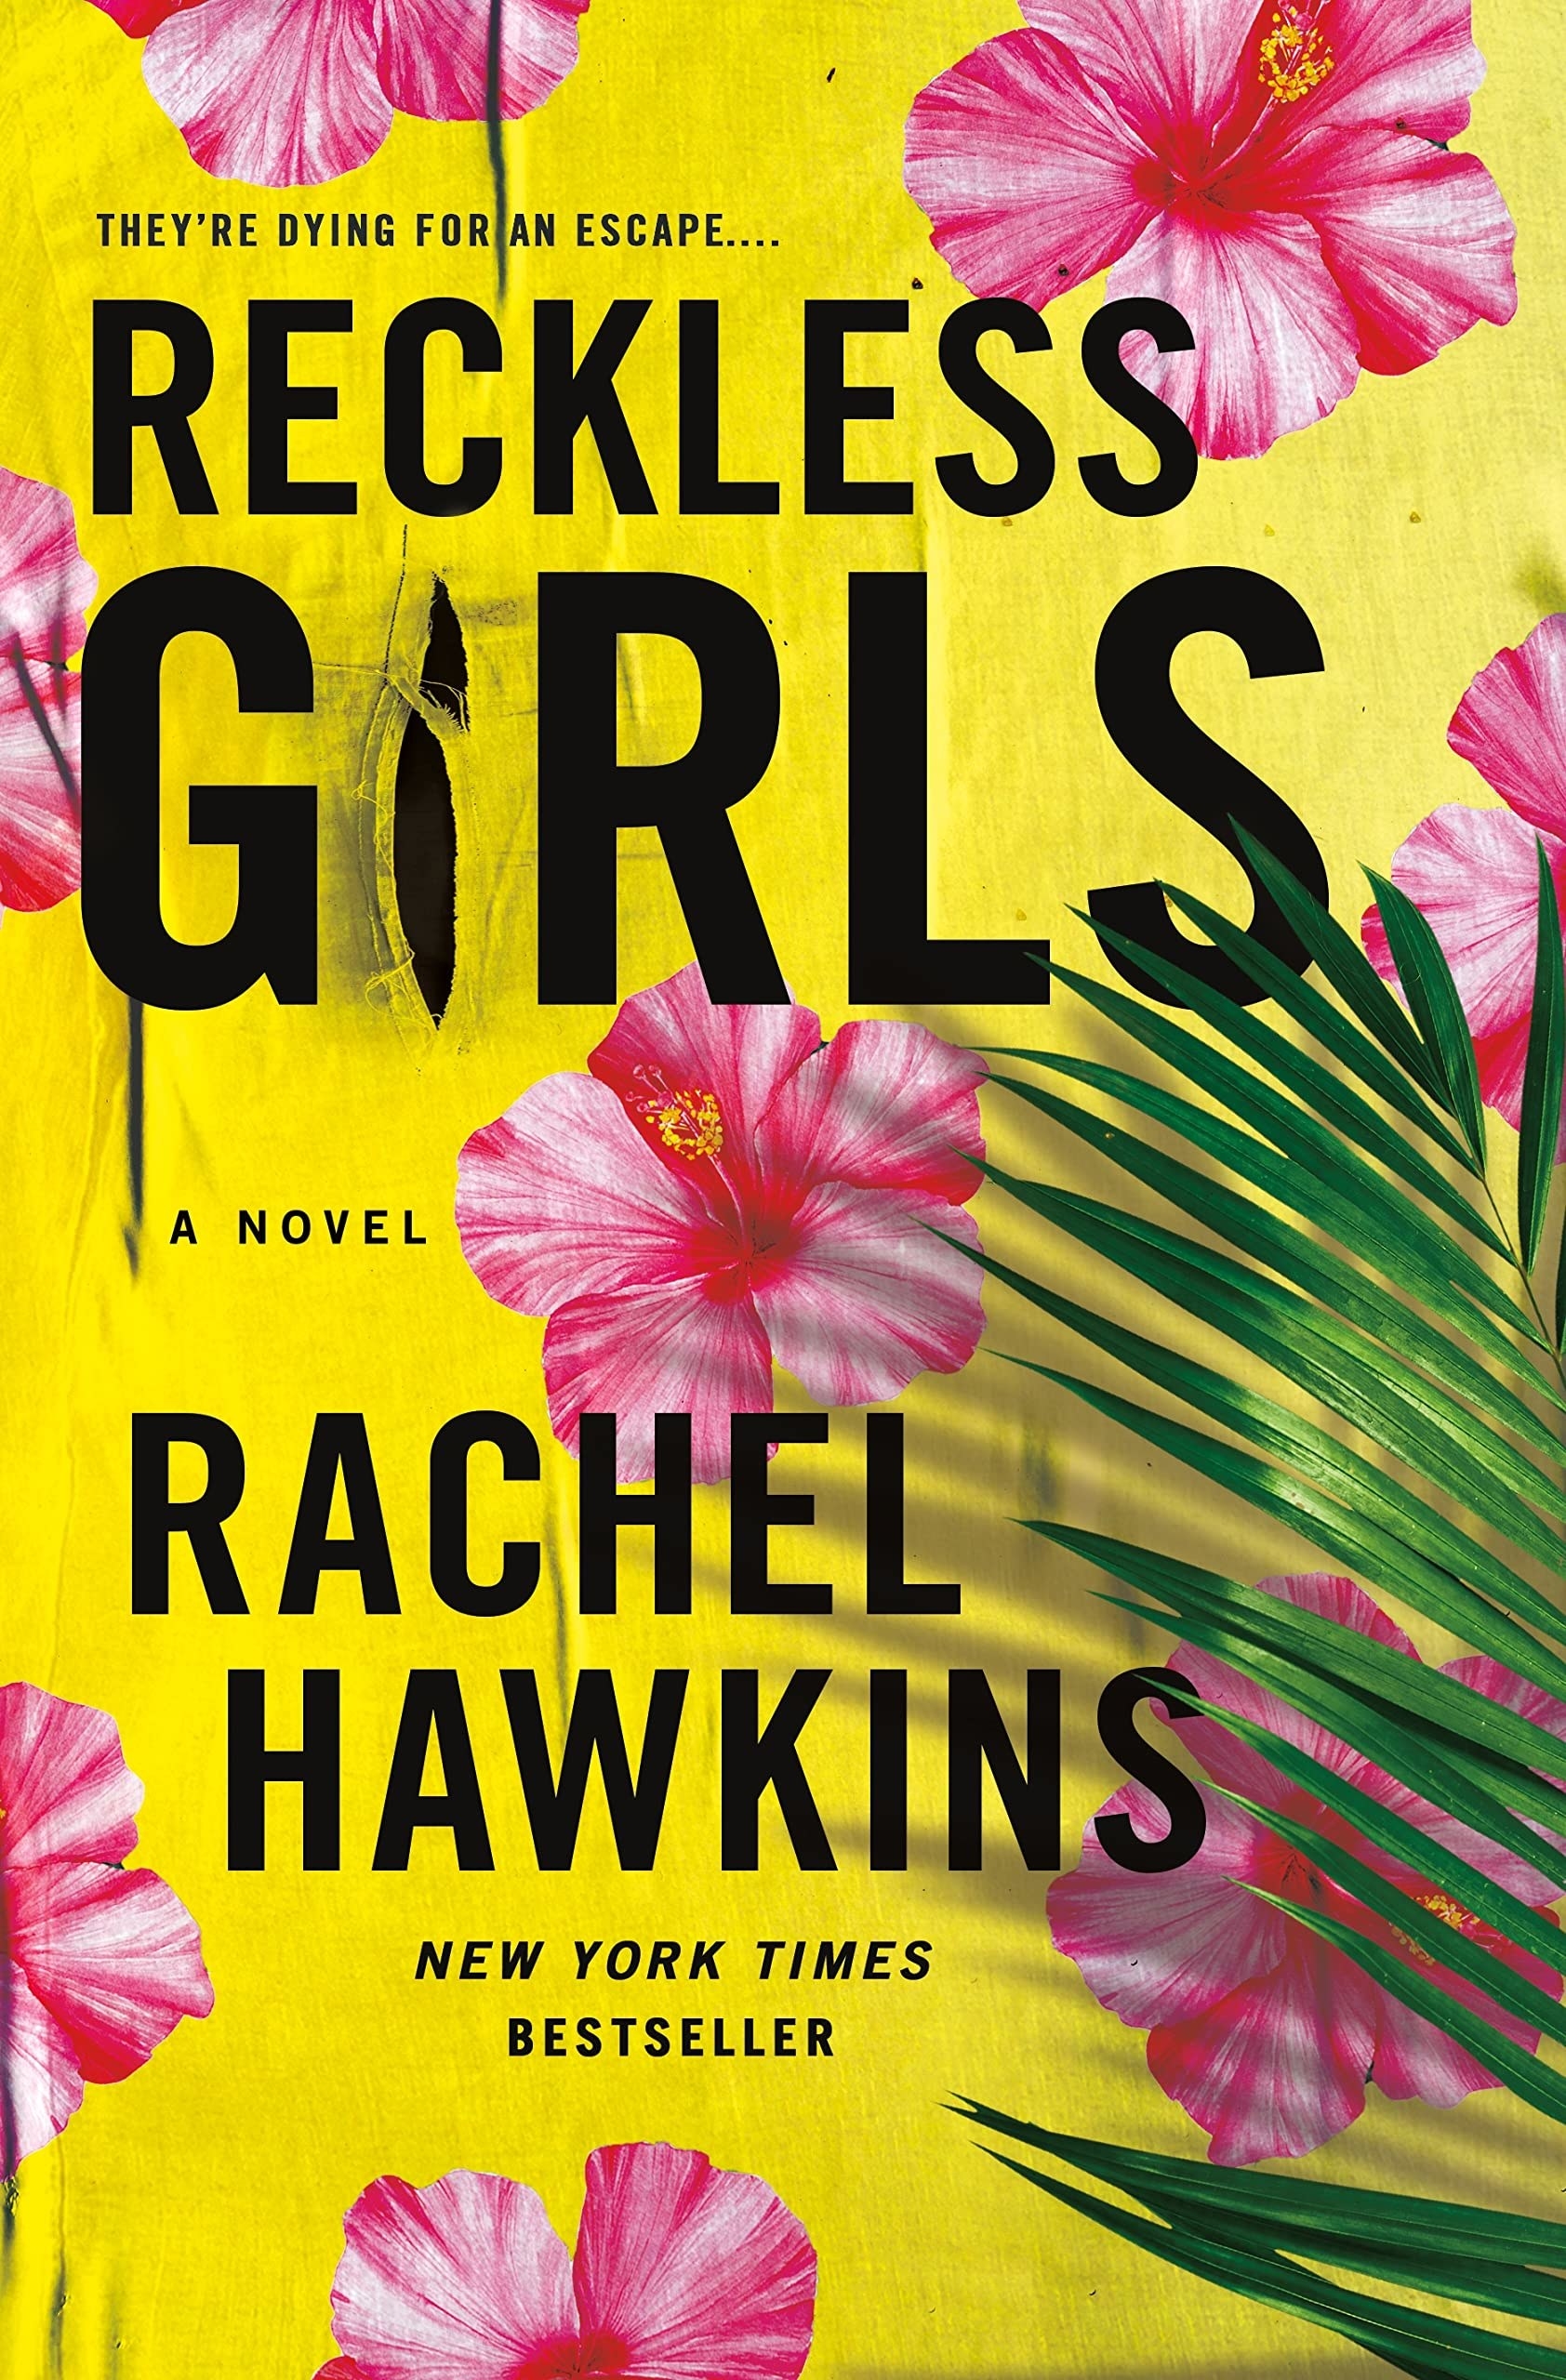 The cover of &quot;Reckless Girls&quot; Rachel Hawkins